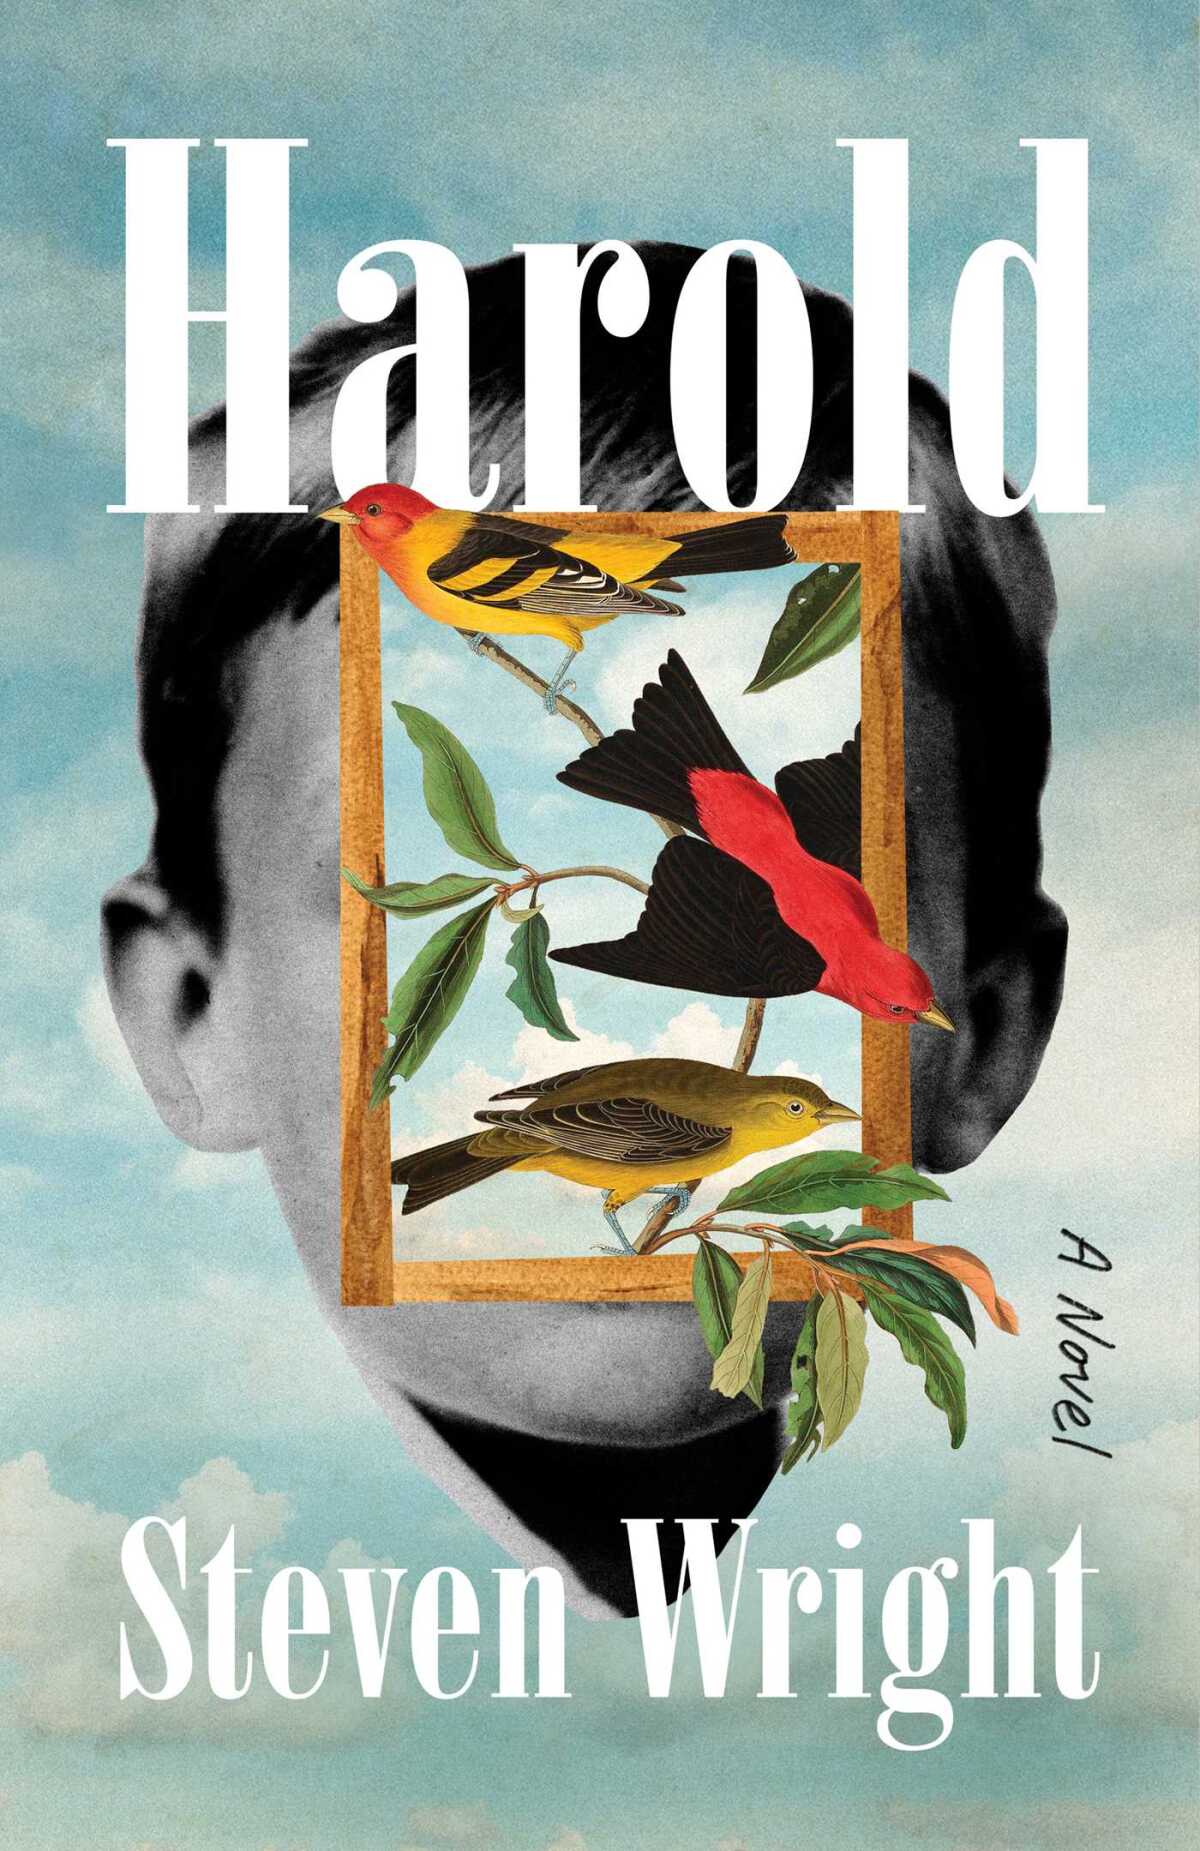 Steven Wright'ın 'Harold' kitabının kapağı